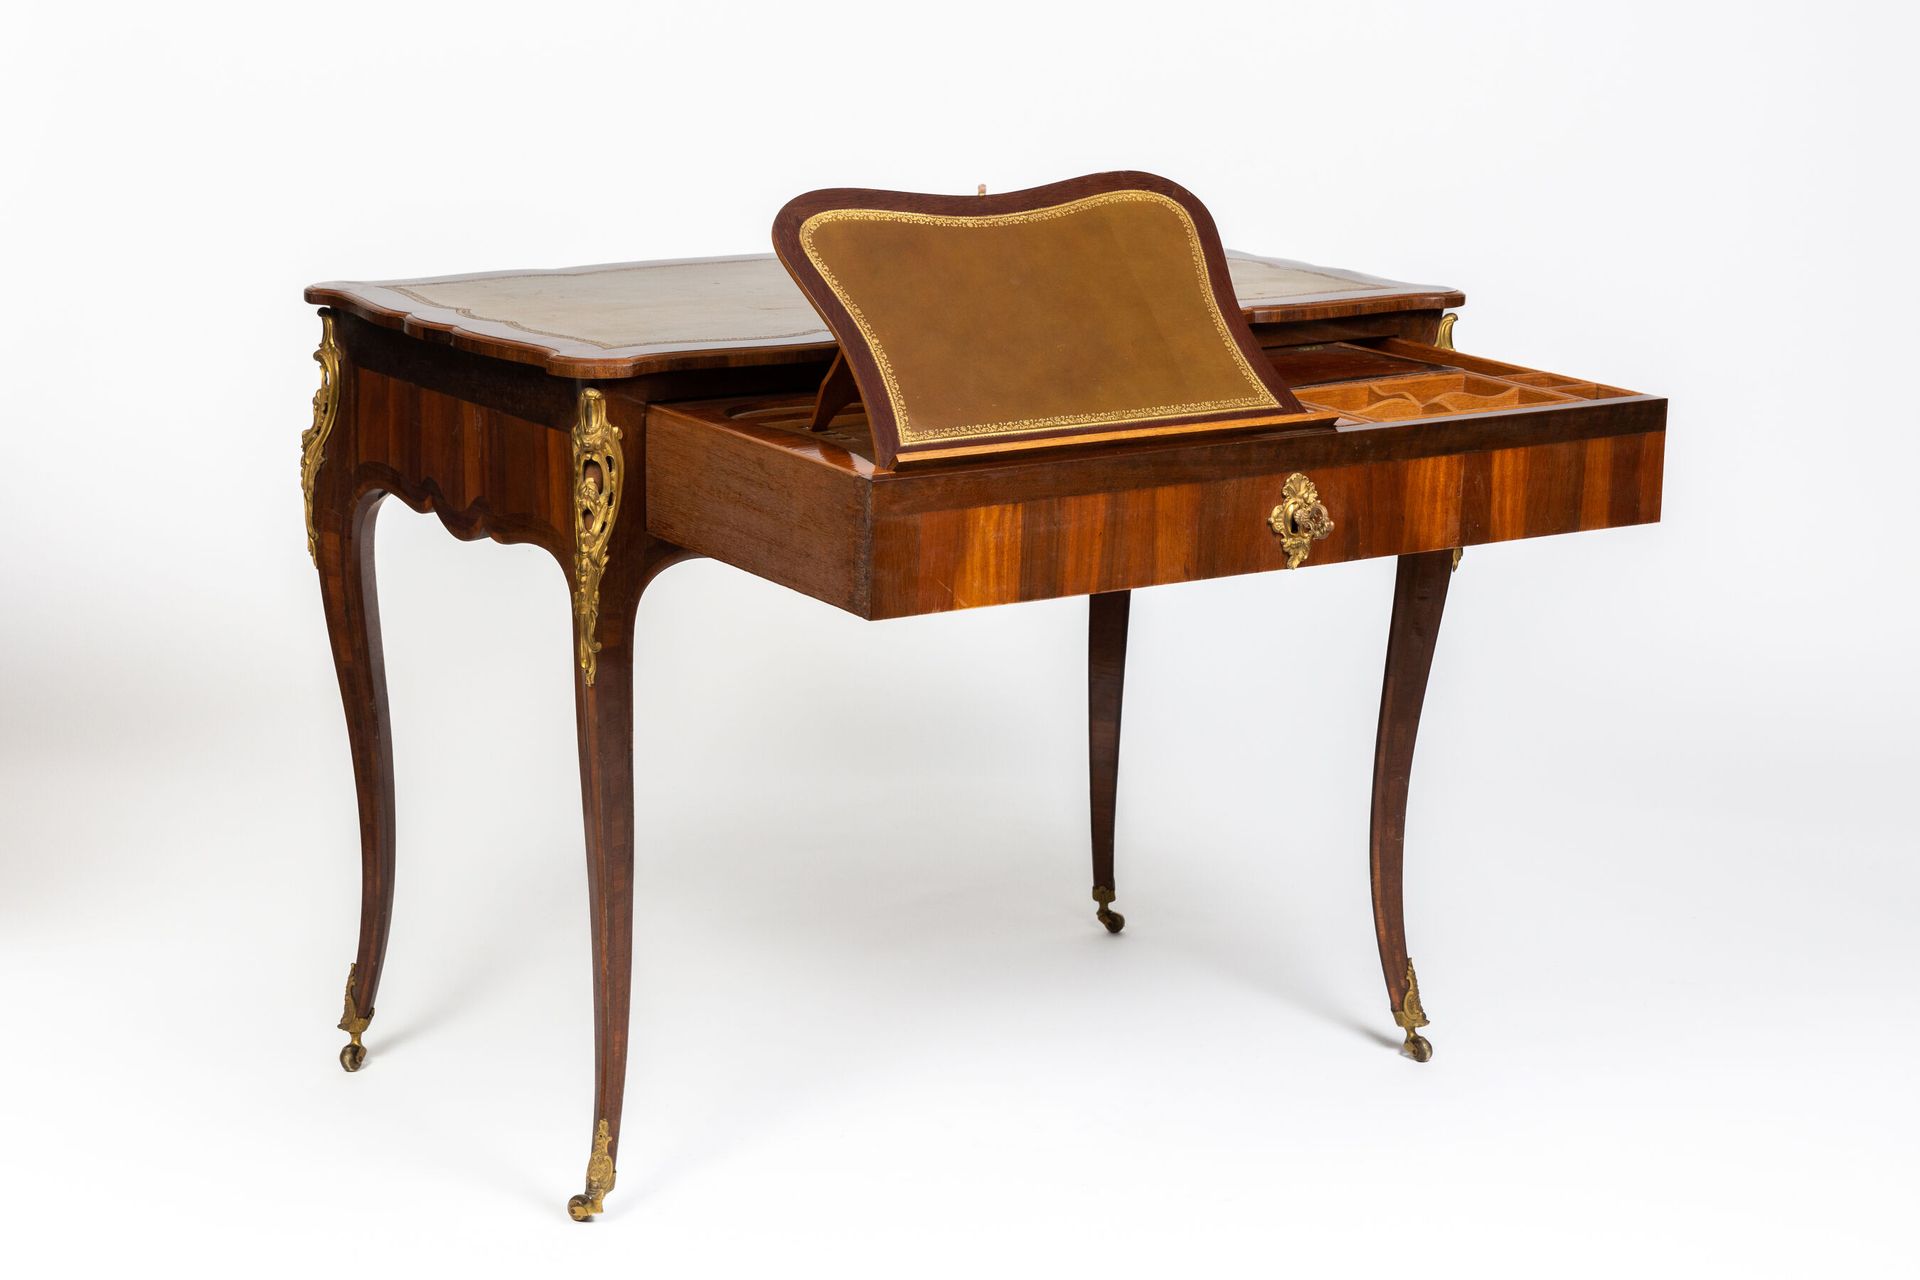 Null Schöner Salon-Schreibtisch mit bewegter Tischplatte aus Rosenholzfurnier.

&hellip;